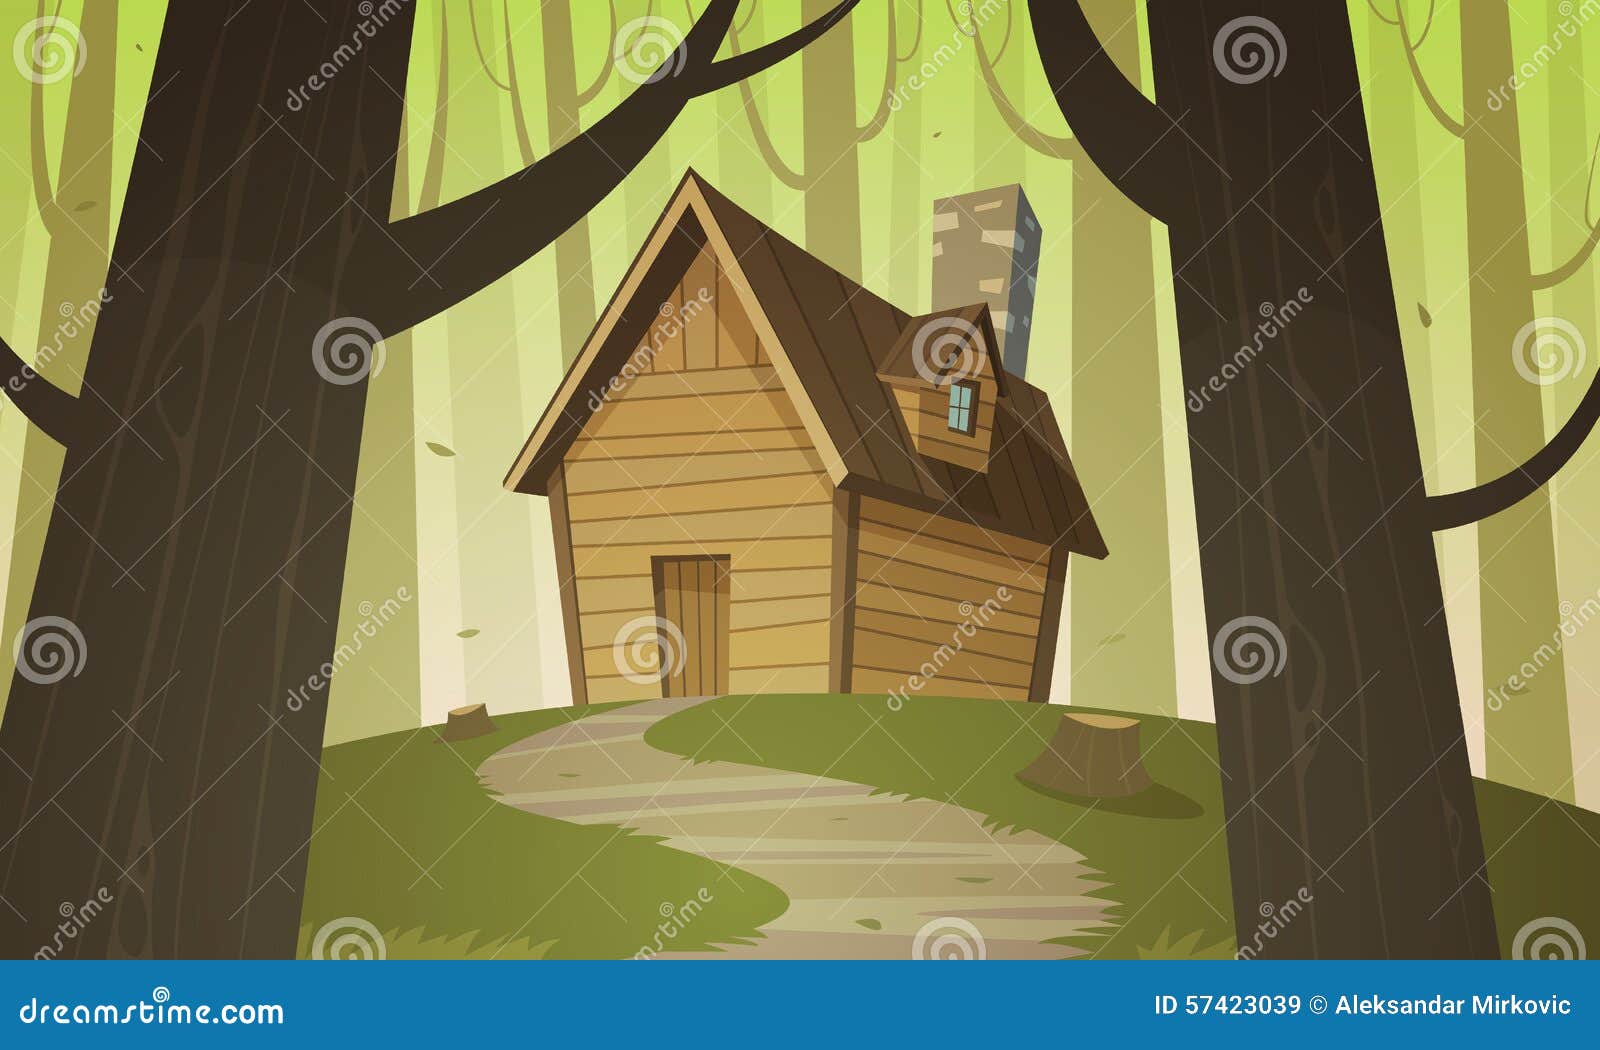 Cartoon Forest Cabin Vector Illustration | CartoonDealer.com #51984954